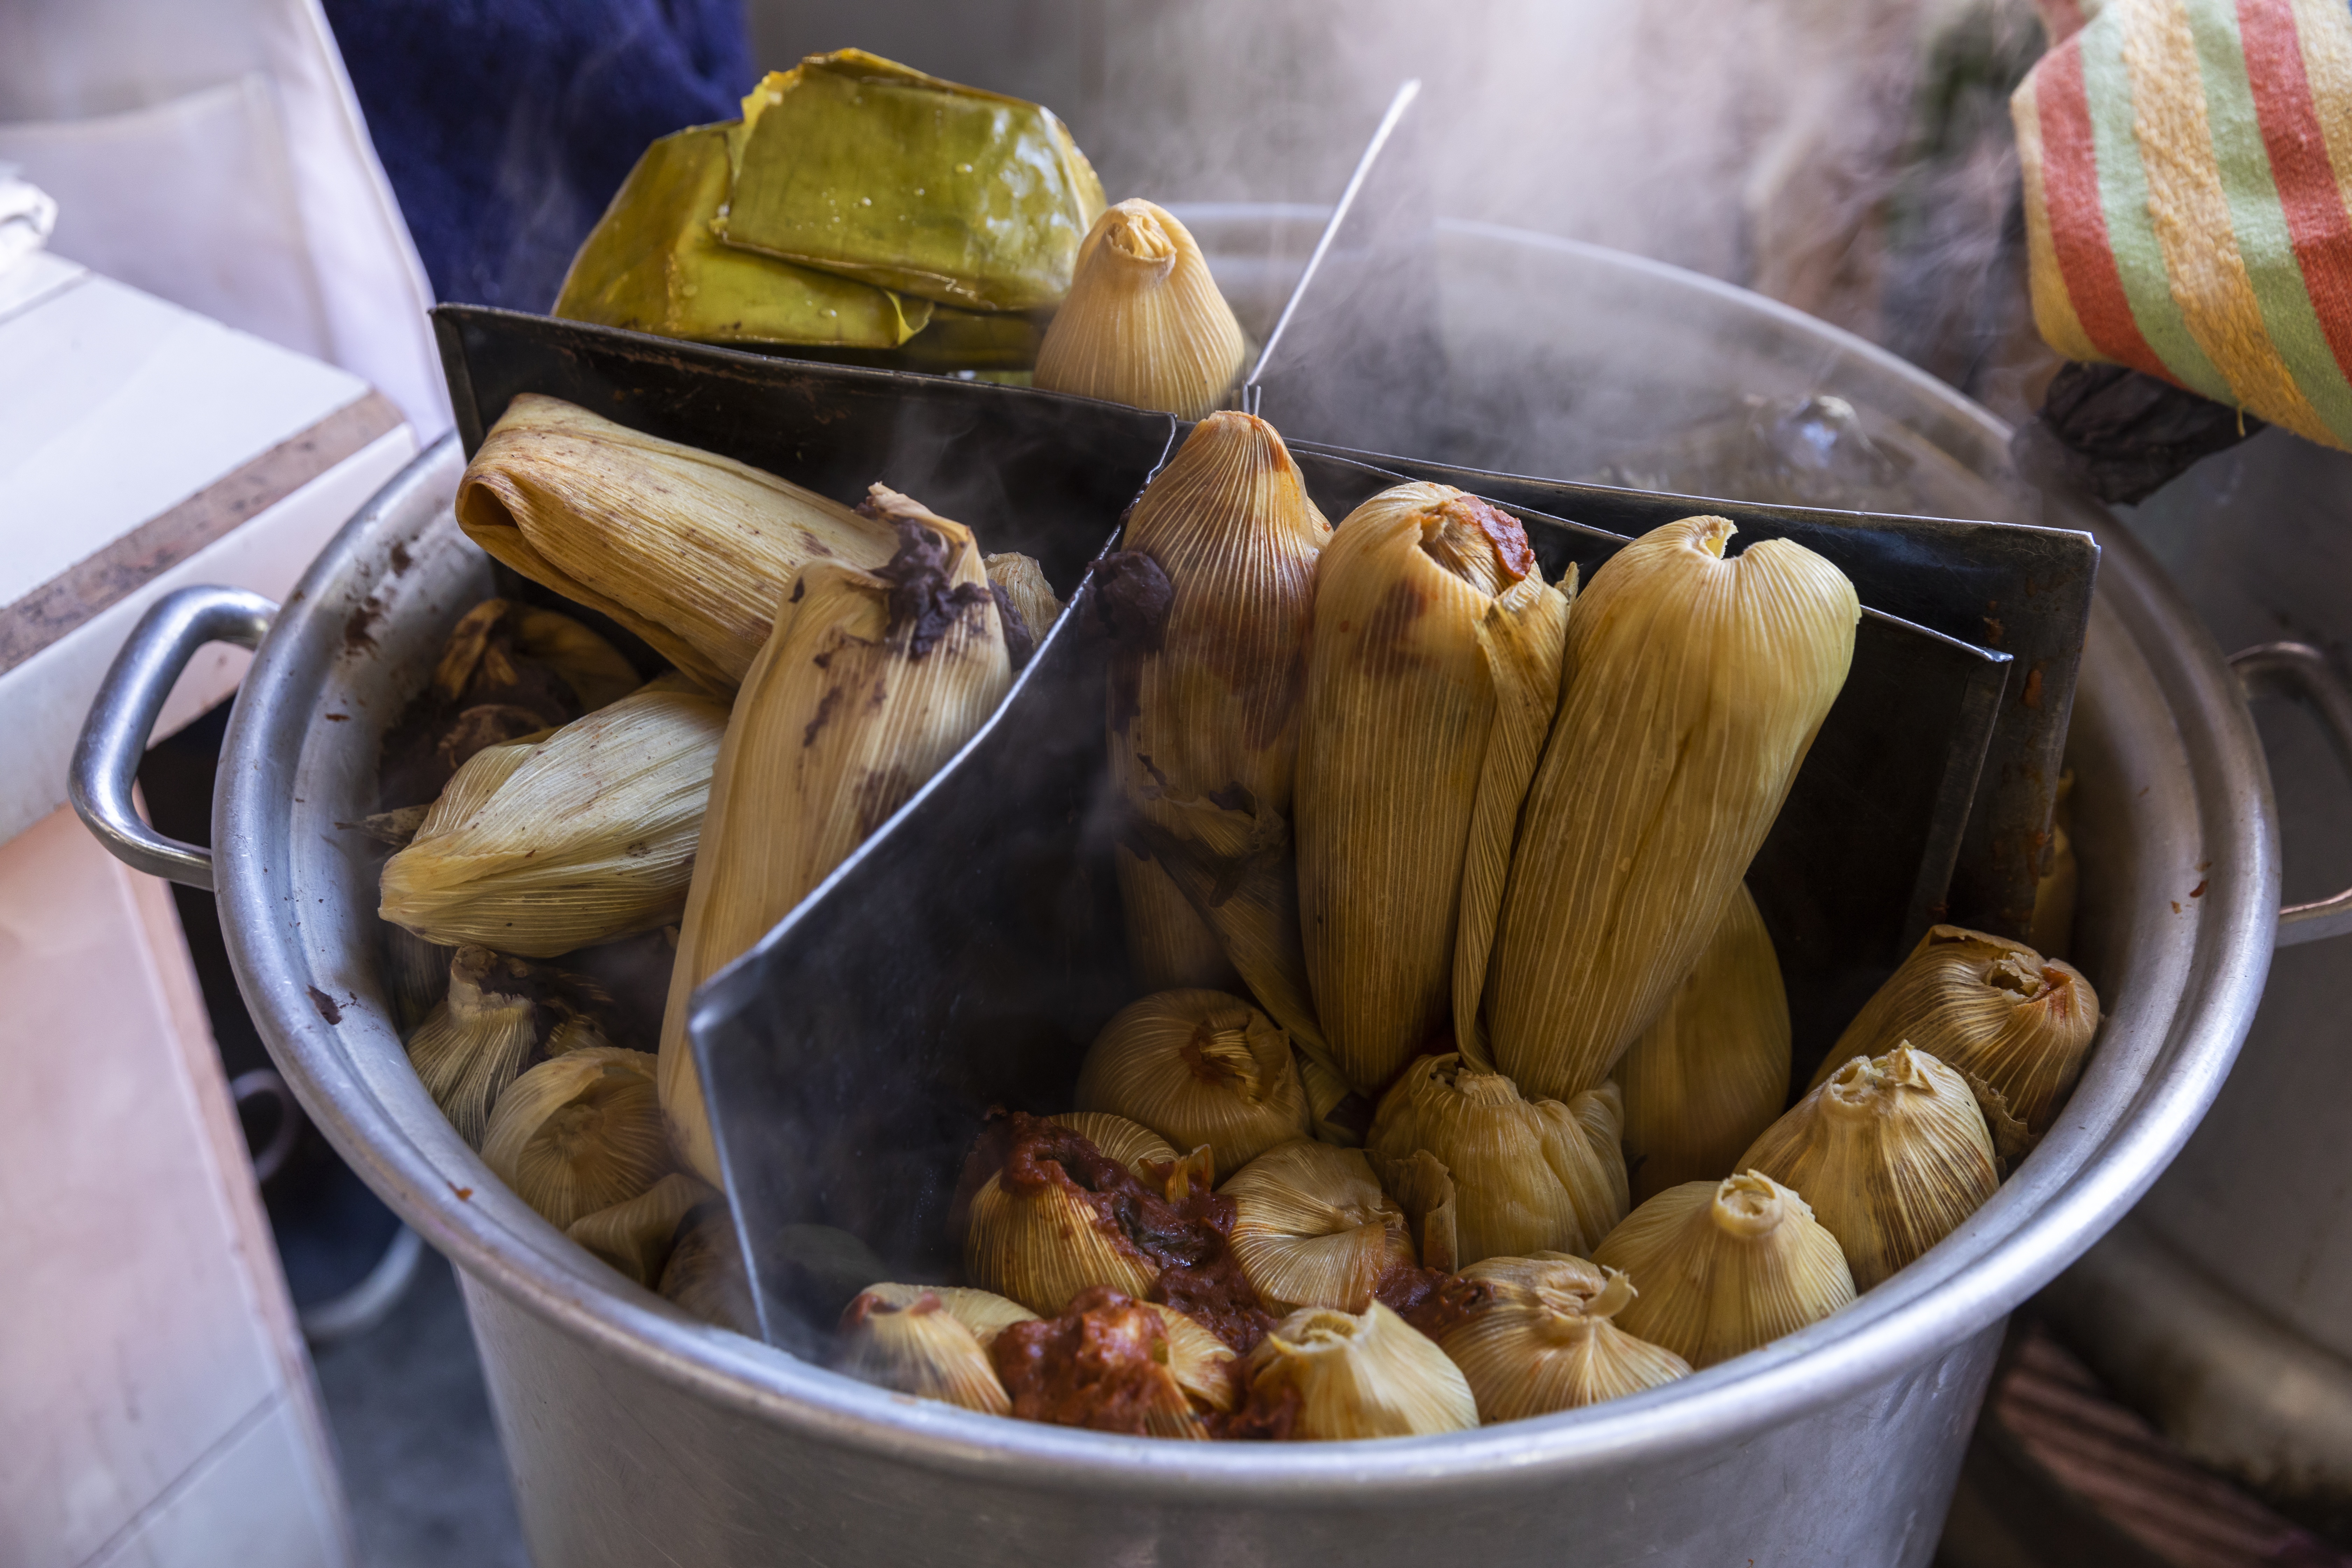 大蒸锅分为四段，每段都有不同风格的玉米粉蒸肉。